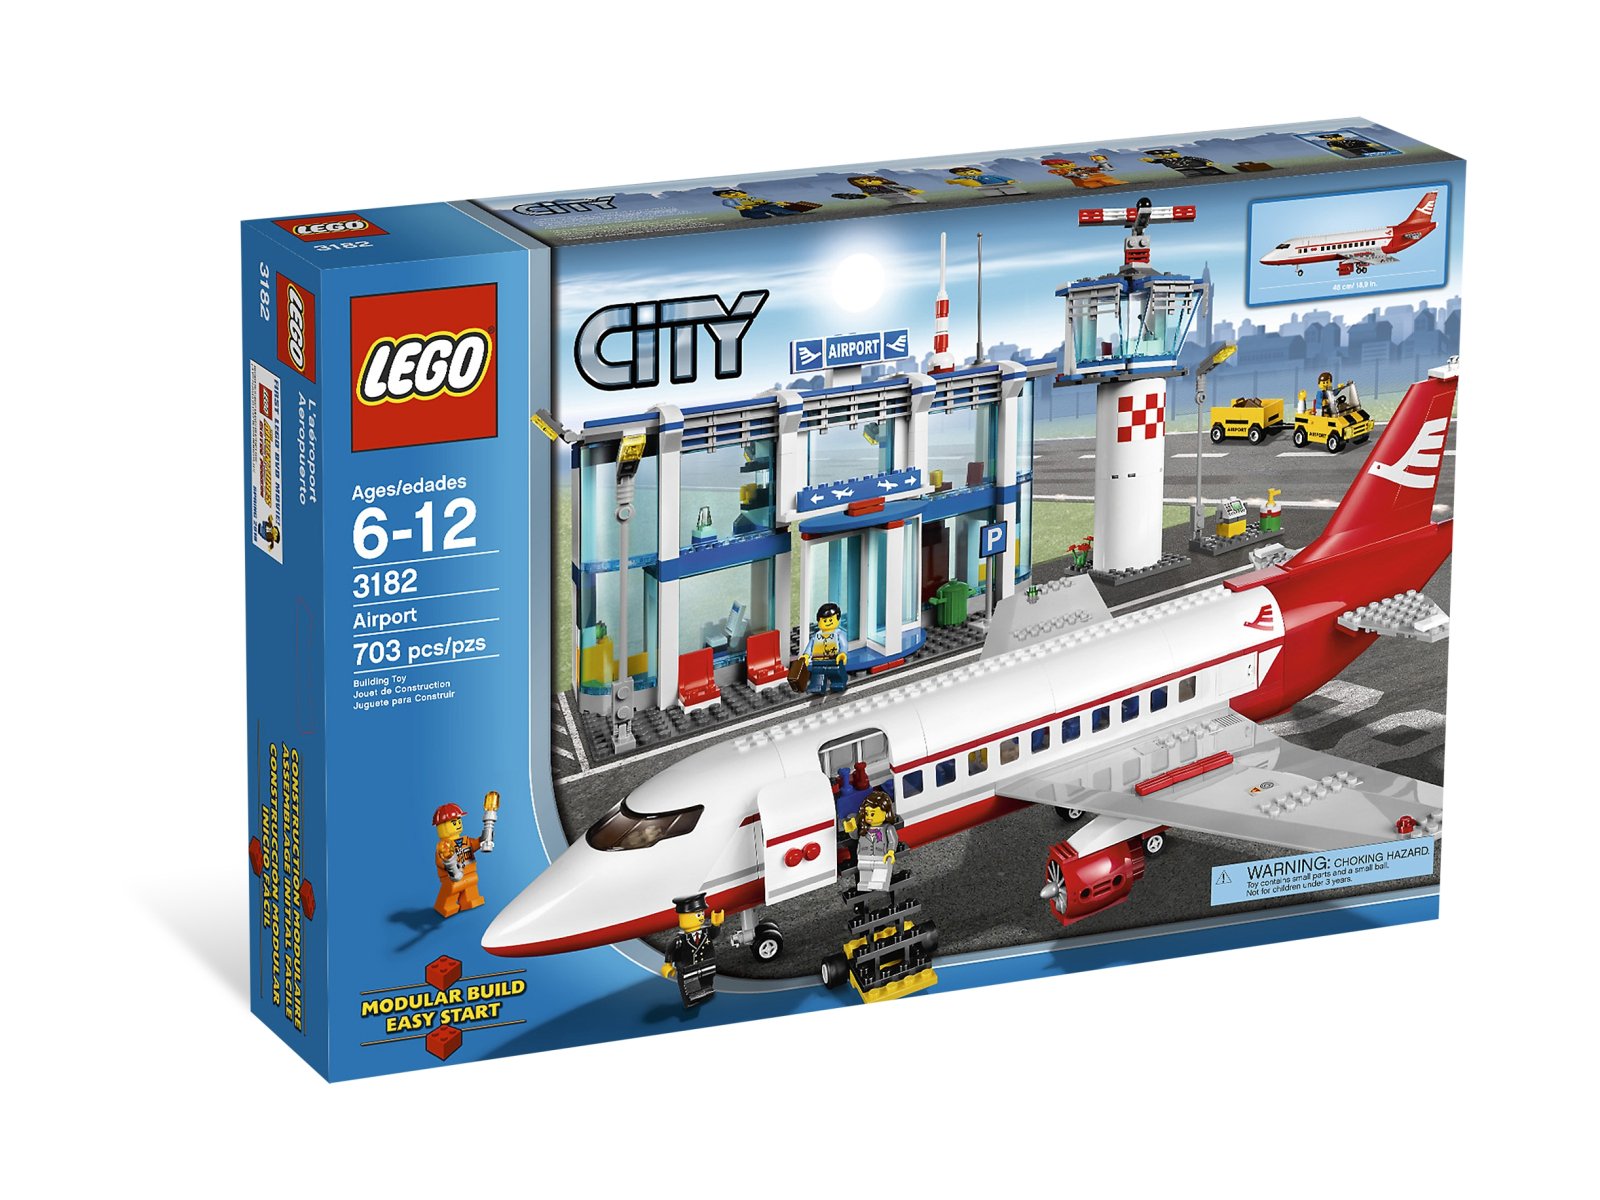 LEGO 3182 City Lotnisko - ceny | zklocków.pl